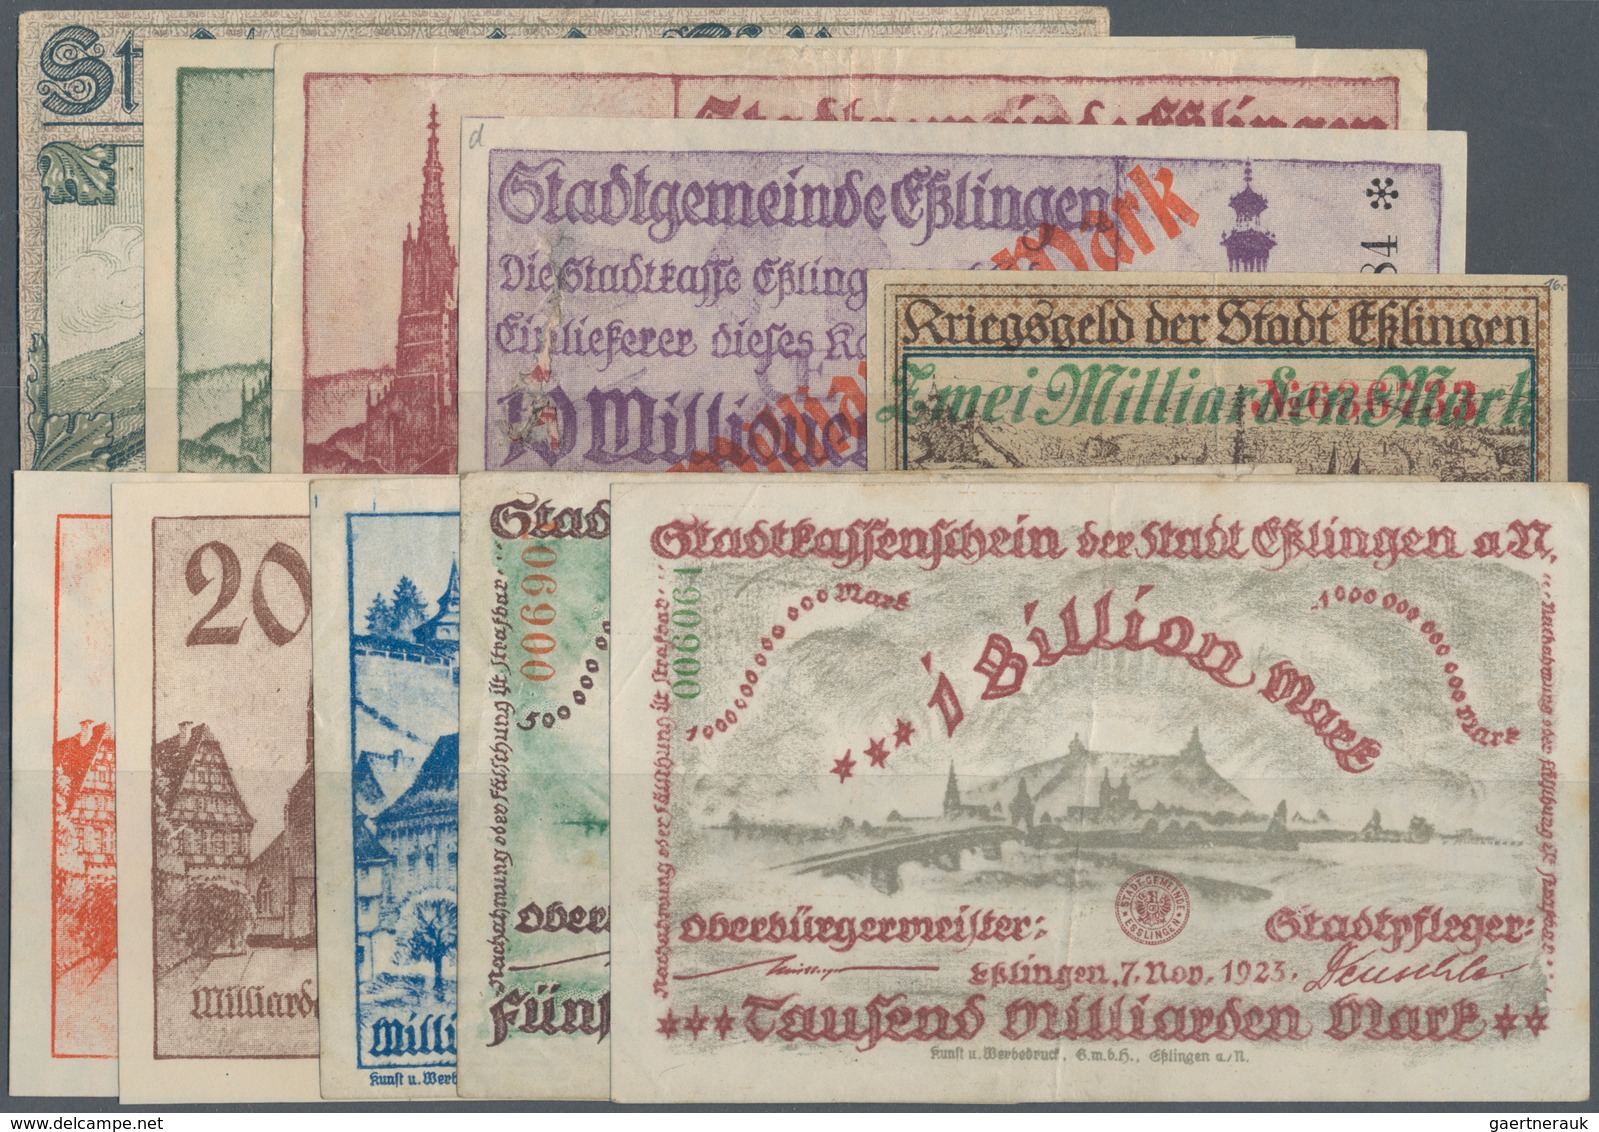 Deutschland - Notgeld - Württemberg: Esslingen, Stadt, 10 Mark, 1.11.1918; 500 Tsd., 1 Mio. Mark, 27 - Lokale Ausgaben